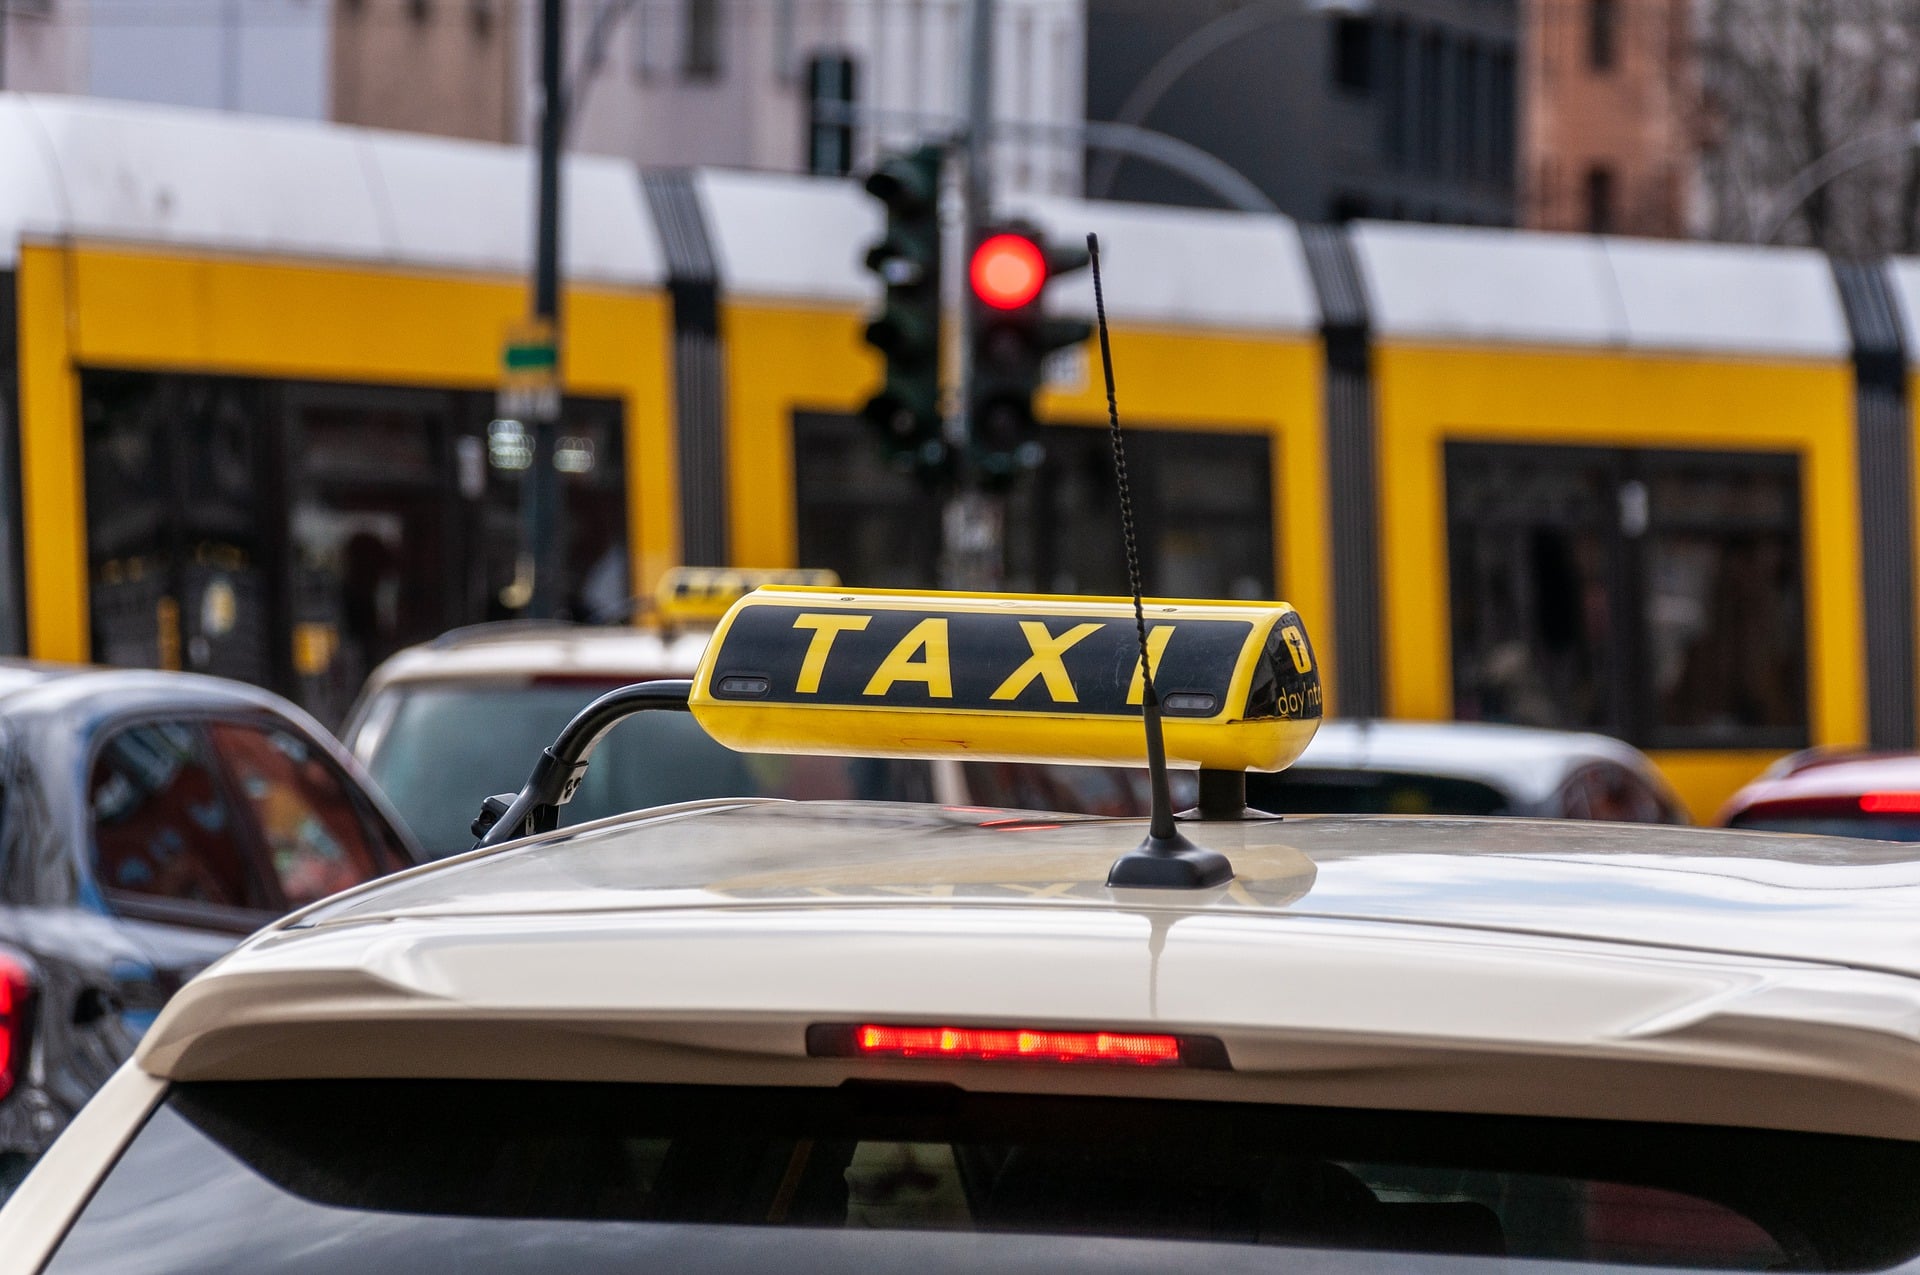 Segítségnyújtás közben rabolták ki a taxist / Fotó: Pixabay